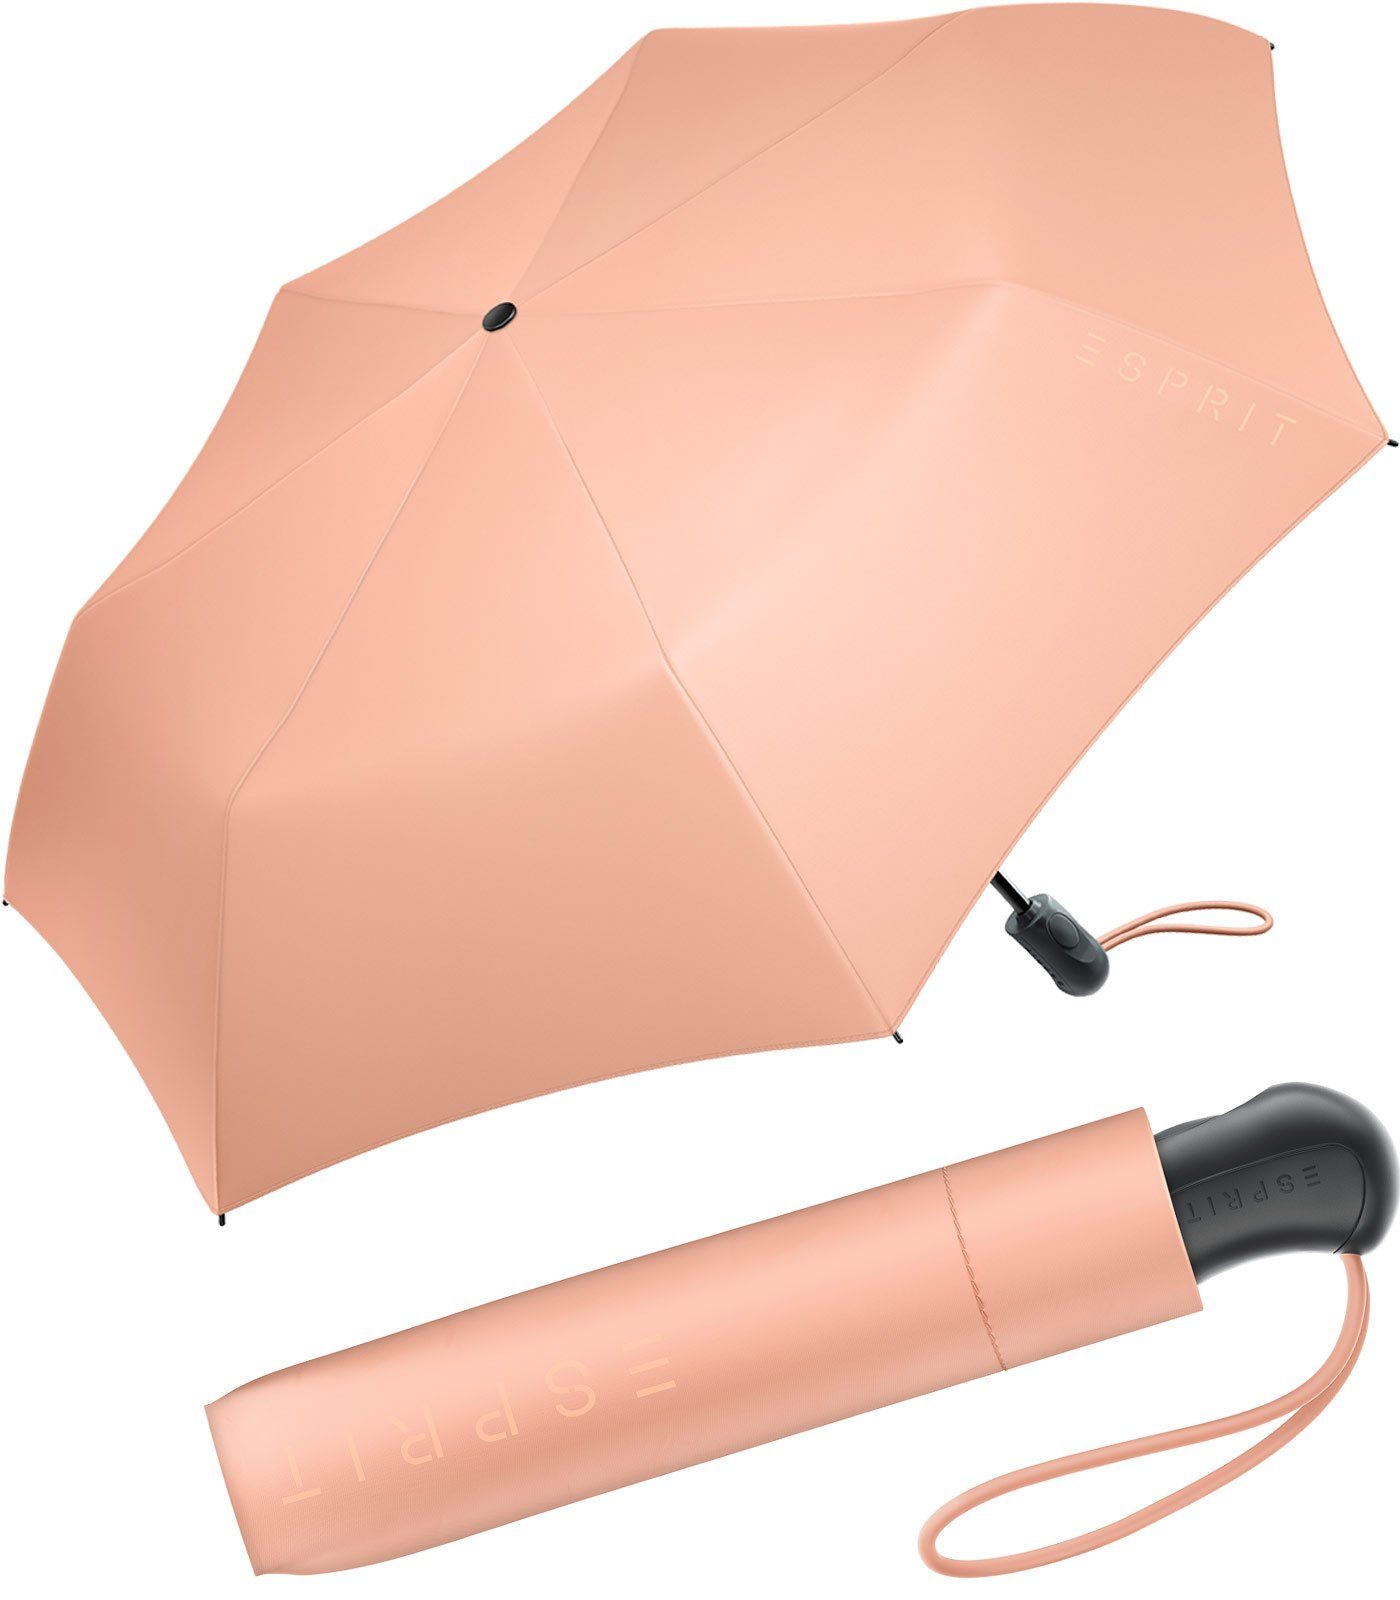 Esprit Taschenregenschirm Damen Easymatic Light Auf-Zu Automatik FJ 2022, stabil und praktisch, in den neuen Trendfarben pfirsich